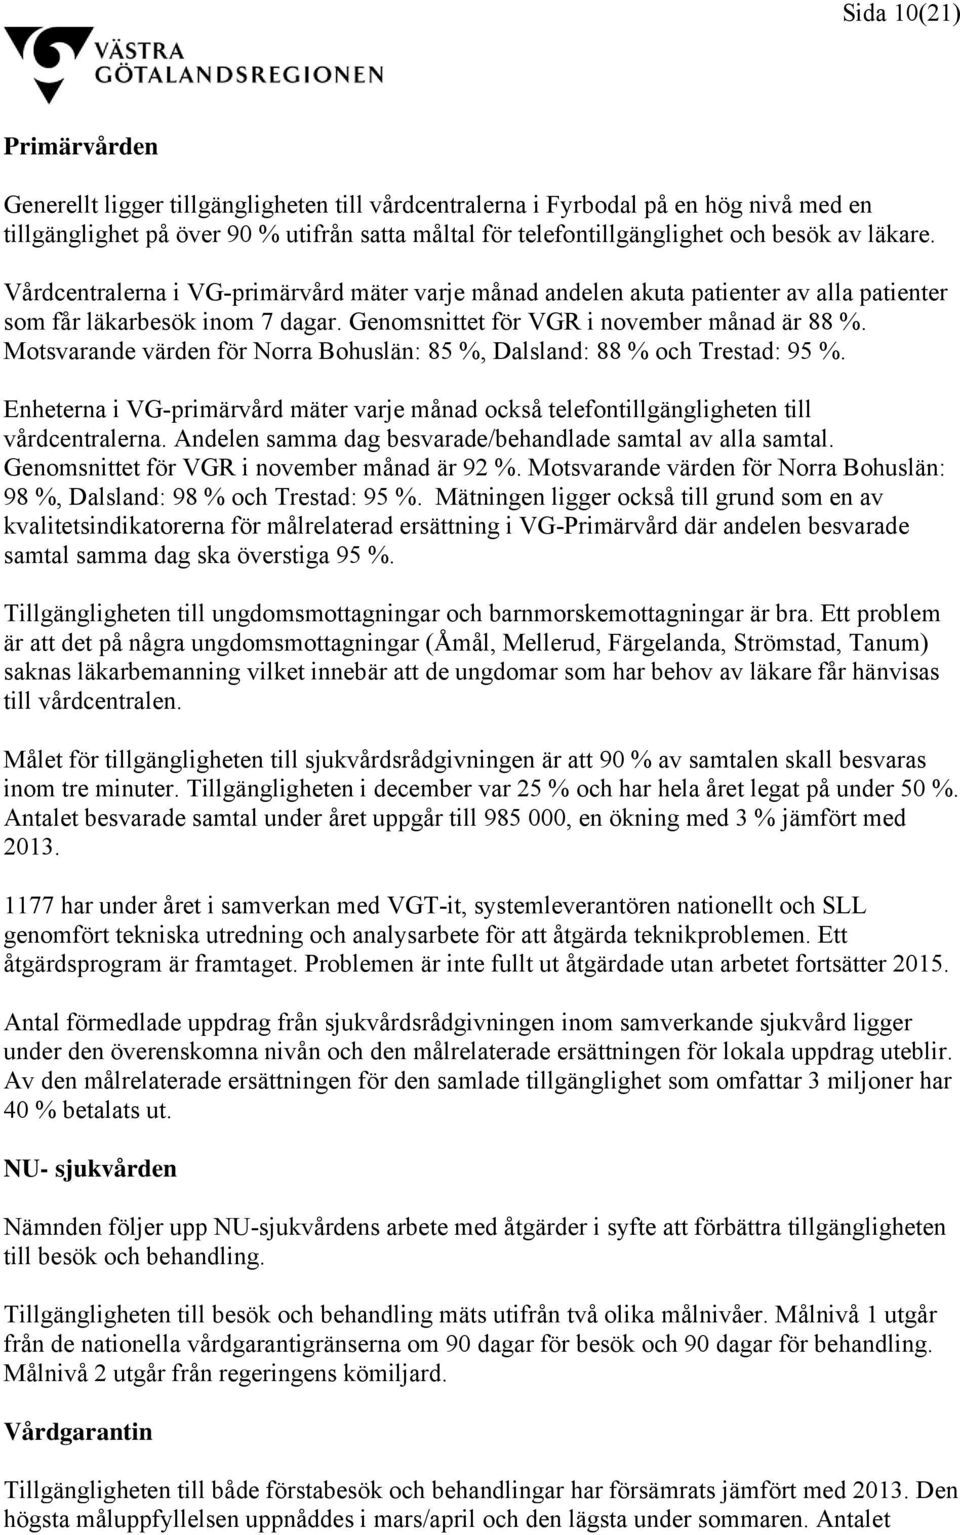 Motsvarande värden för Norra Bohuslän: 85 %, Dalsland: 88 % och Trestad: 95 %. Enheterna i VG-primärvård mäter varje månad också telefontillgängligheten till vårdcentralerna.